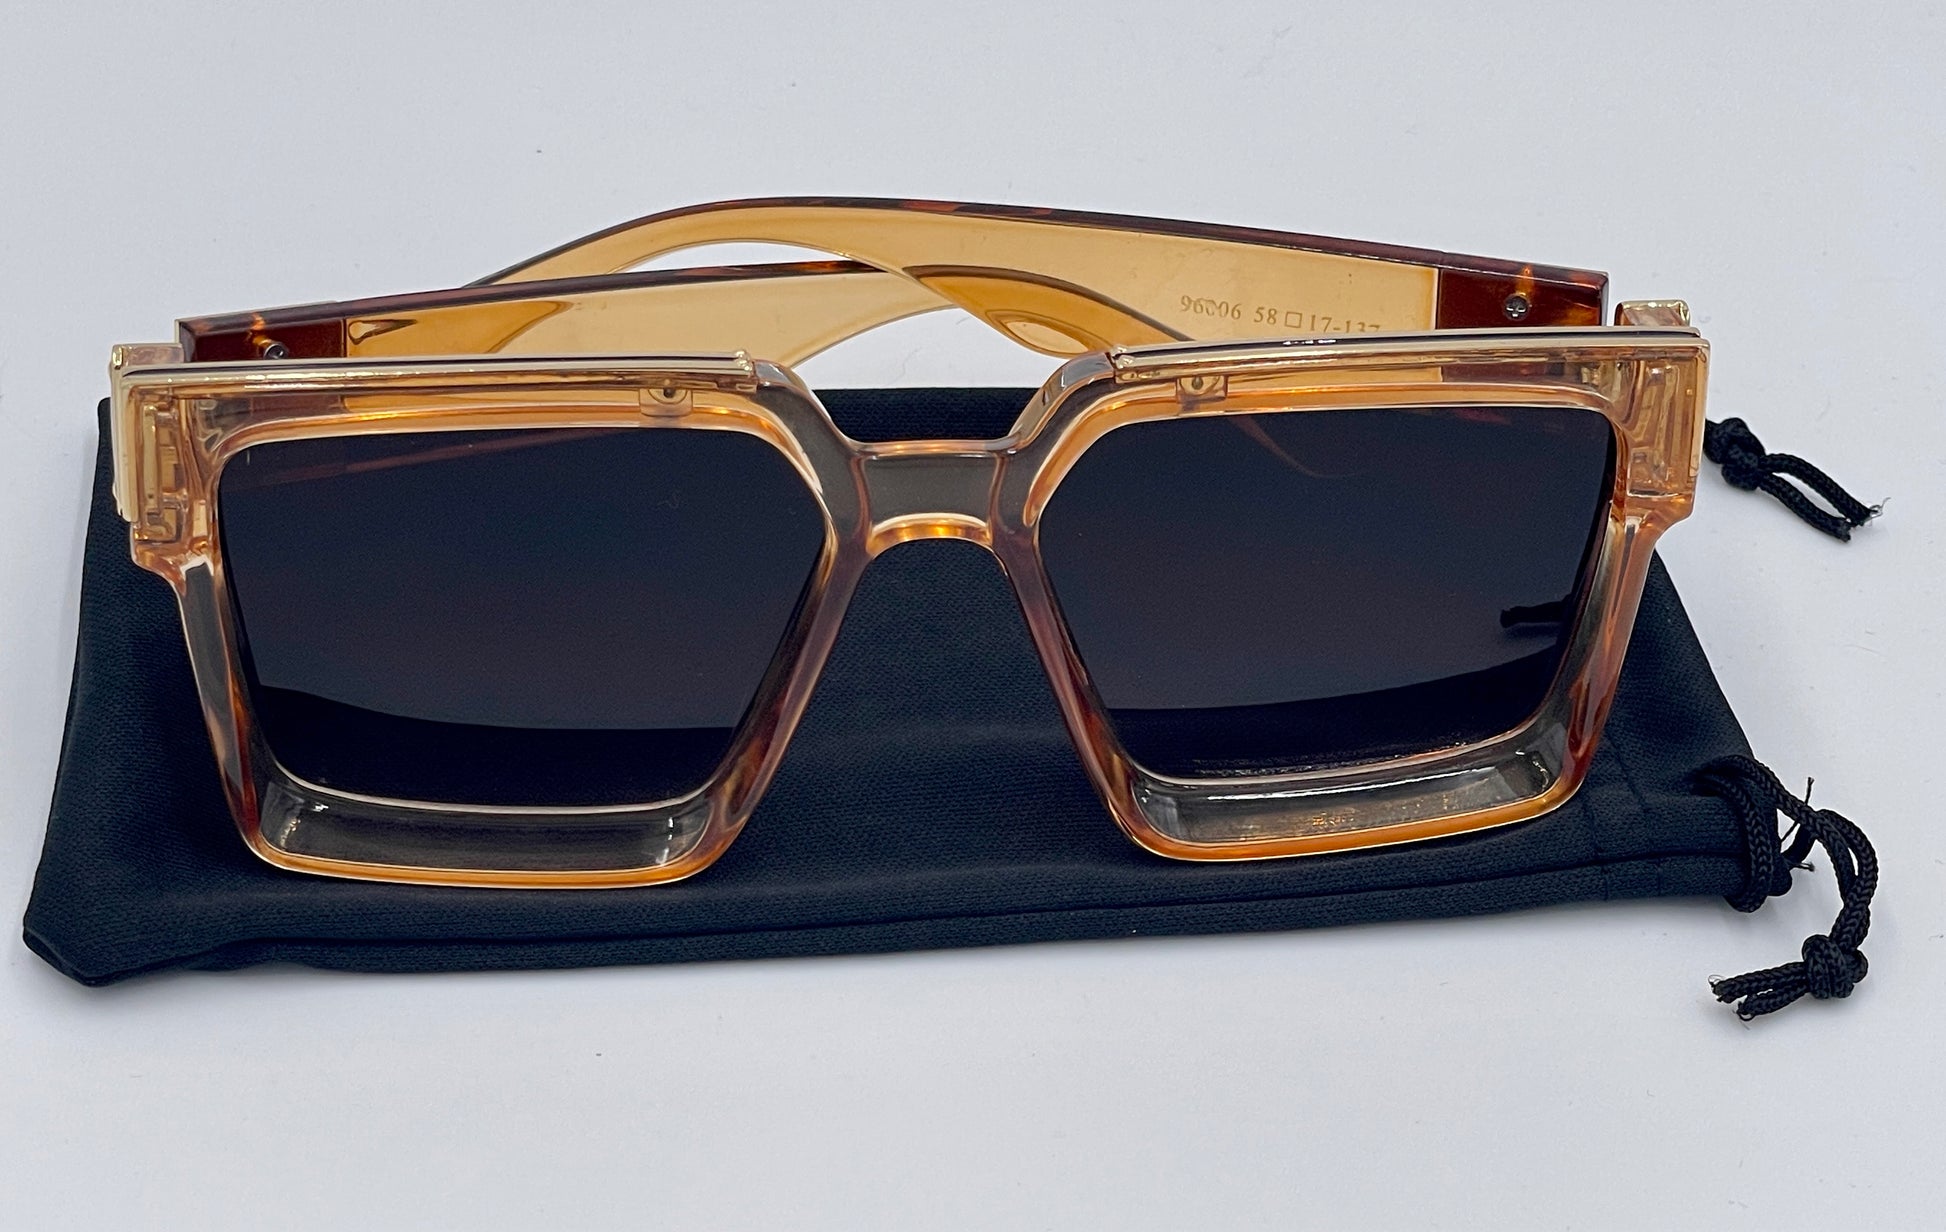 Authentic Louis Vuitton M96006wn Millionaire Sunglasses for Sale